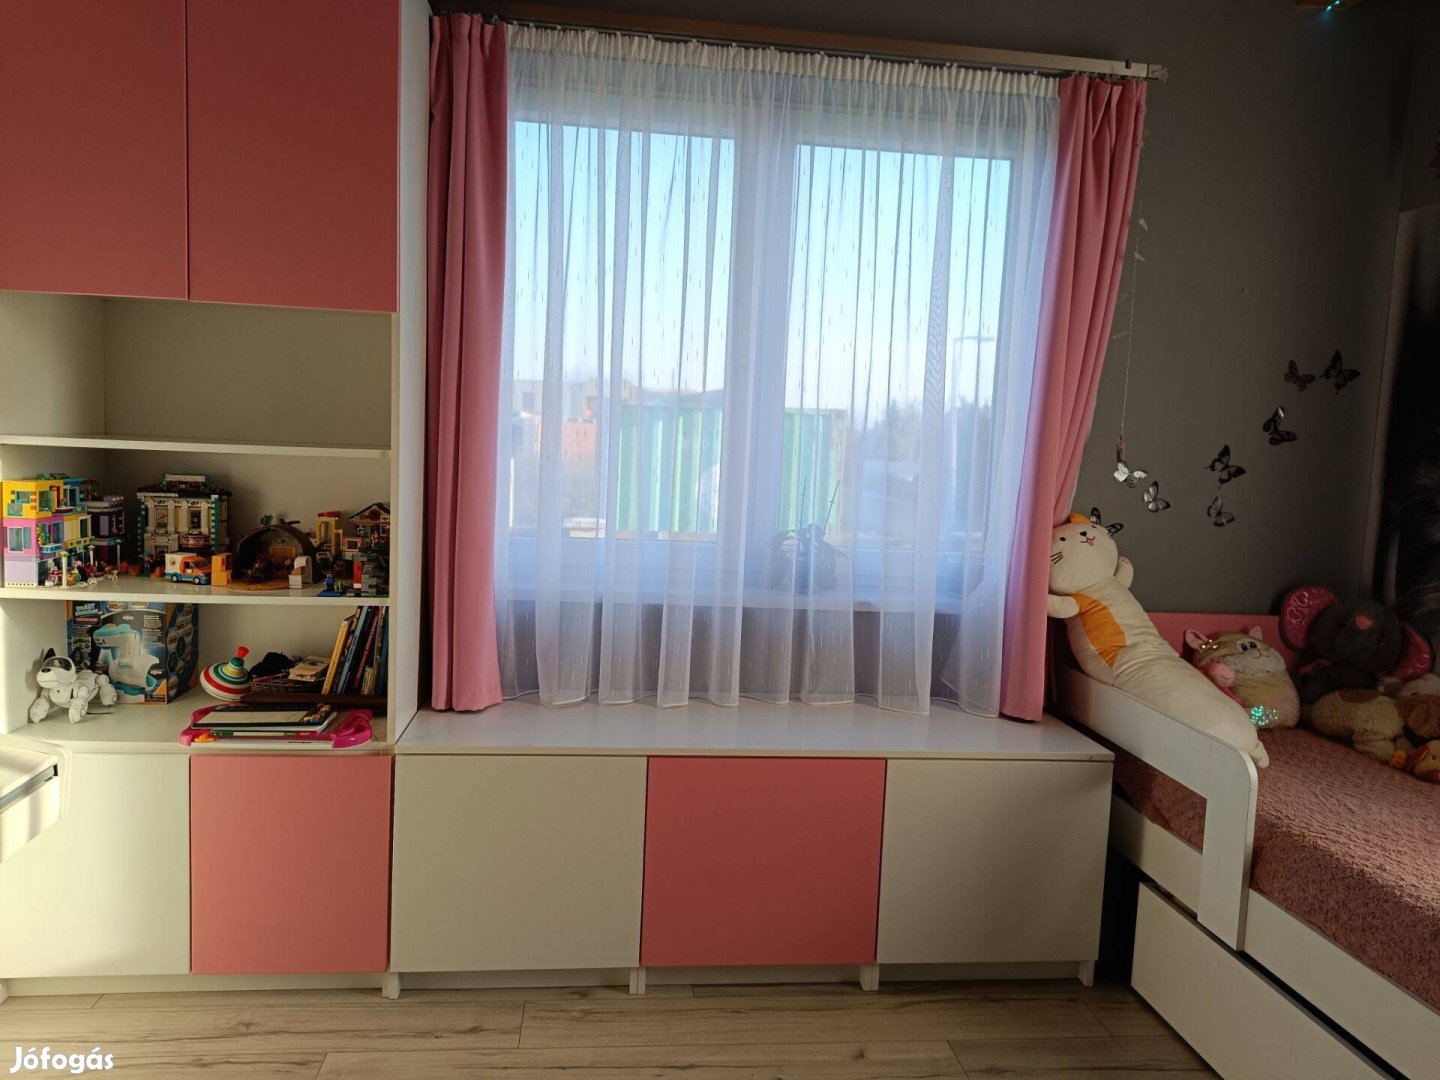 Eladó gyerek egyedileg tervezett gyerekbútor